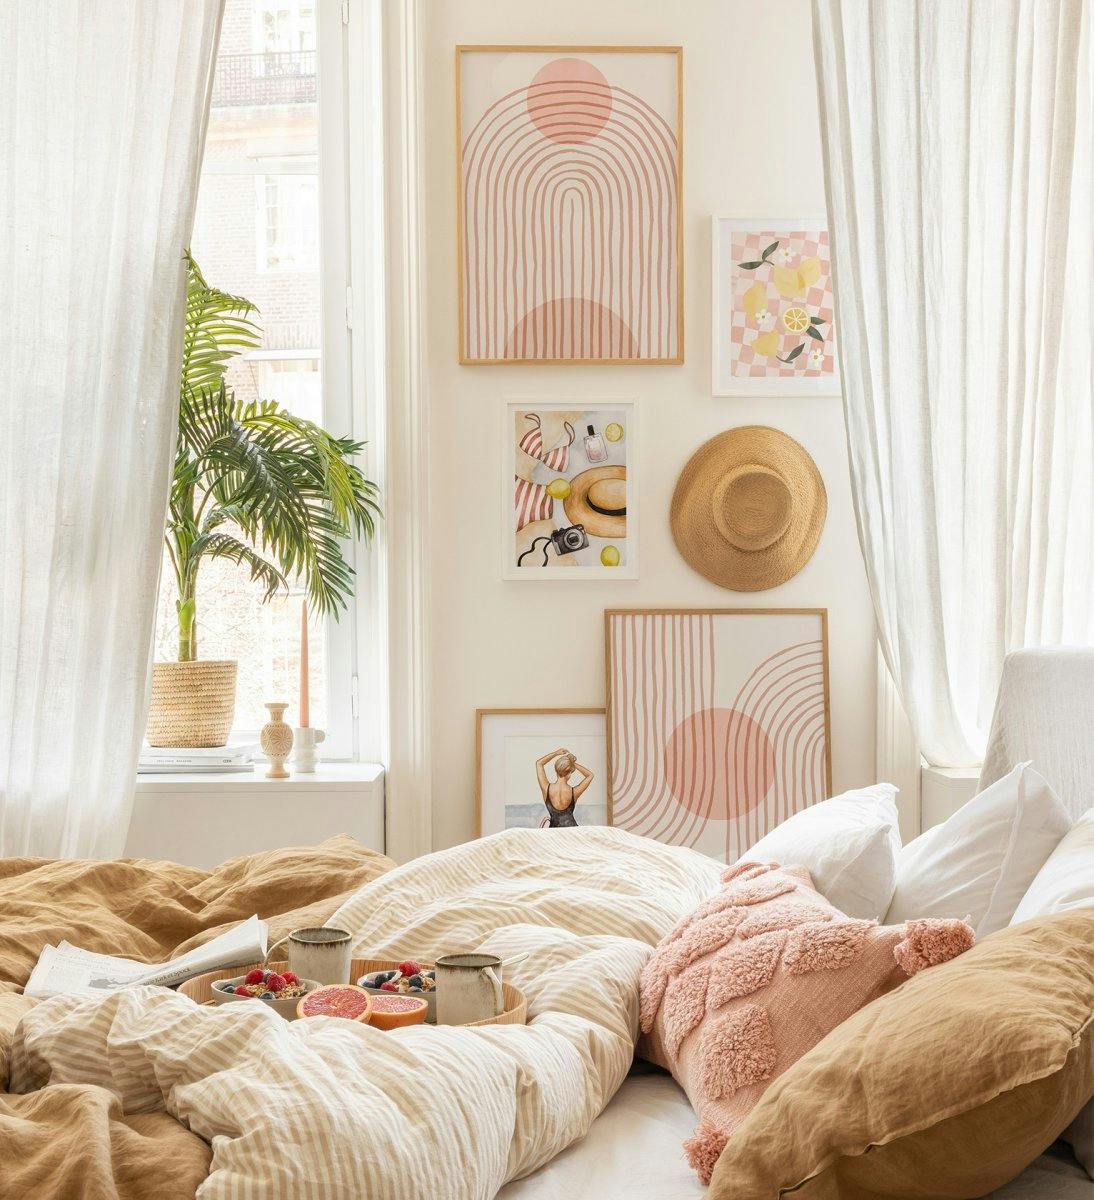 Stilfull och trendig tavelvägg i rosa med abstrakta linjer och former med ekramar och vita ramar för sovrummet